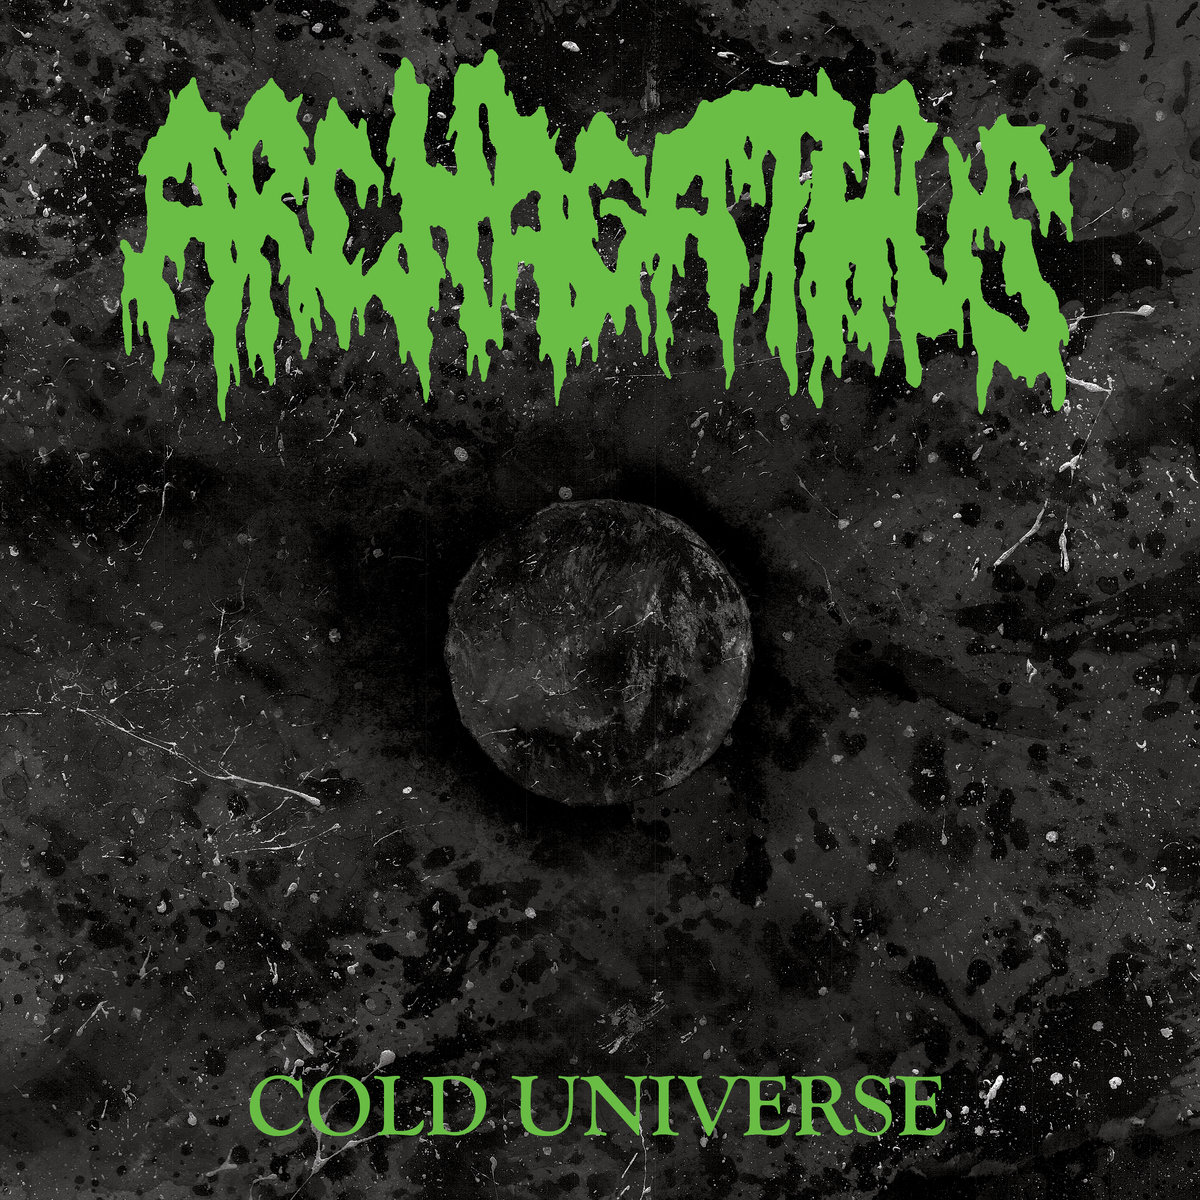 ARCHAGATHUS - "COLD UNIVERSE" 7"